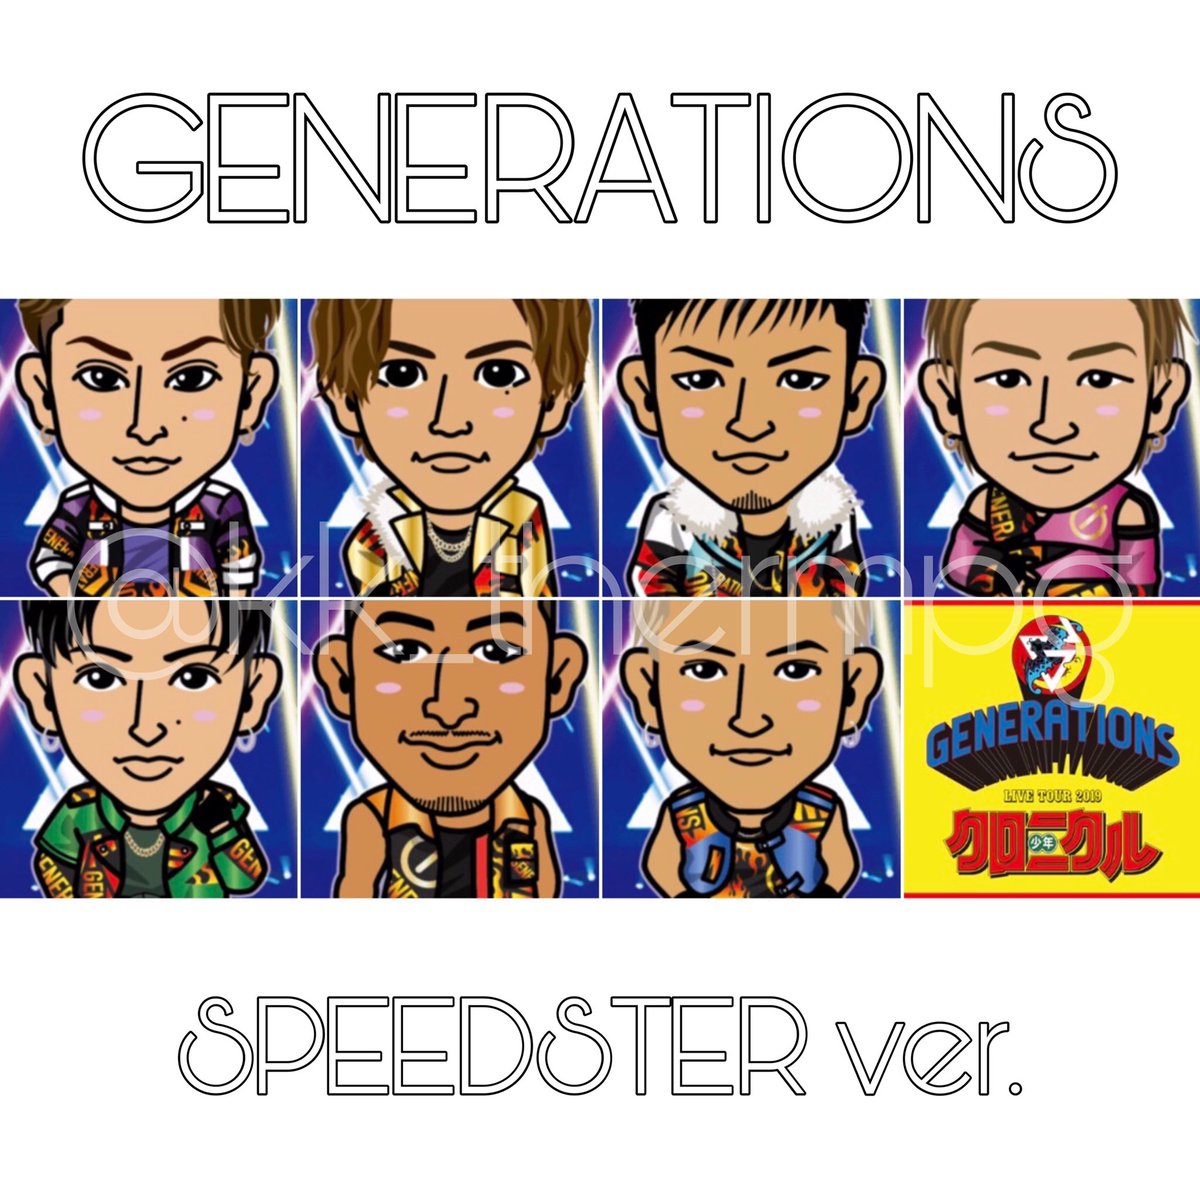 𝓨𝓾𝔂𝓪 Generations 少年クロニクル Speedster Ver 全メンバー キャラ画 たくさんrtきたら配布します 欲しいと思ったらrt Generations 少年クロニクル Speedster Ss キャラ画 T Co Cz5q6tbafk